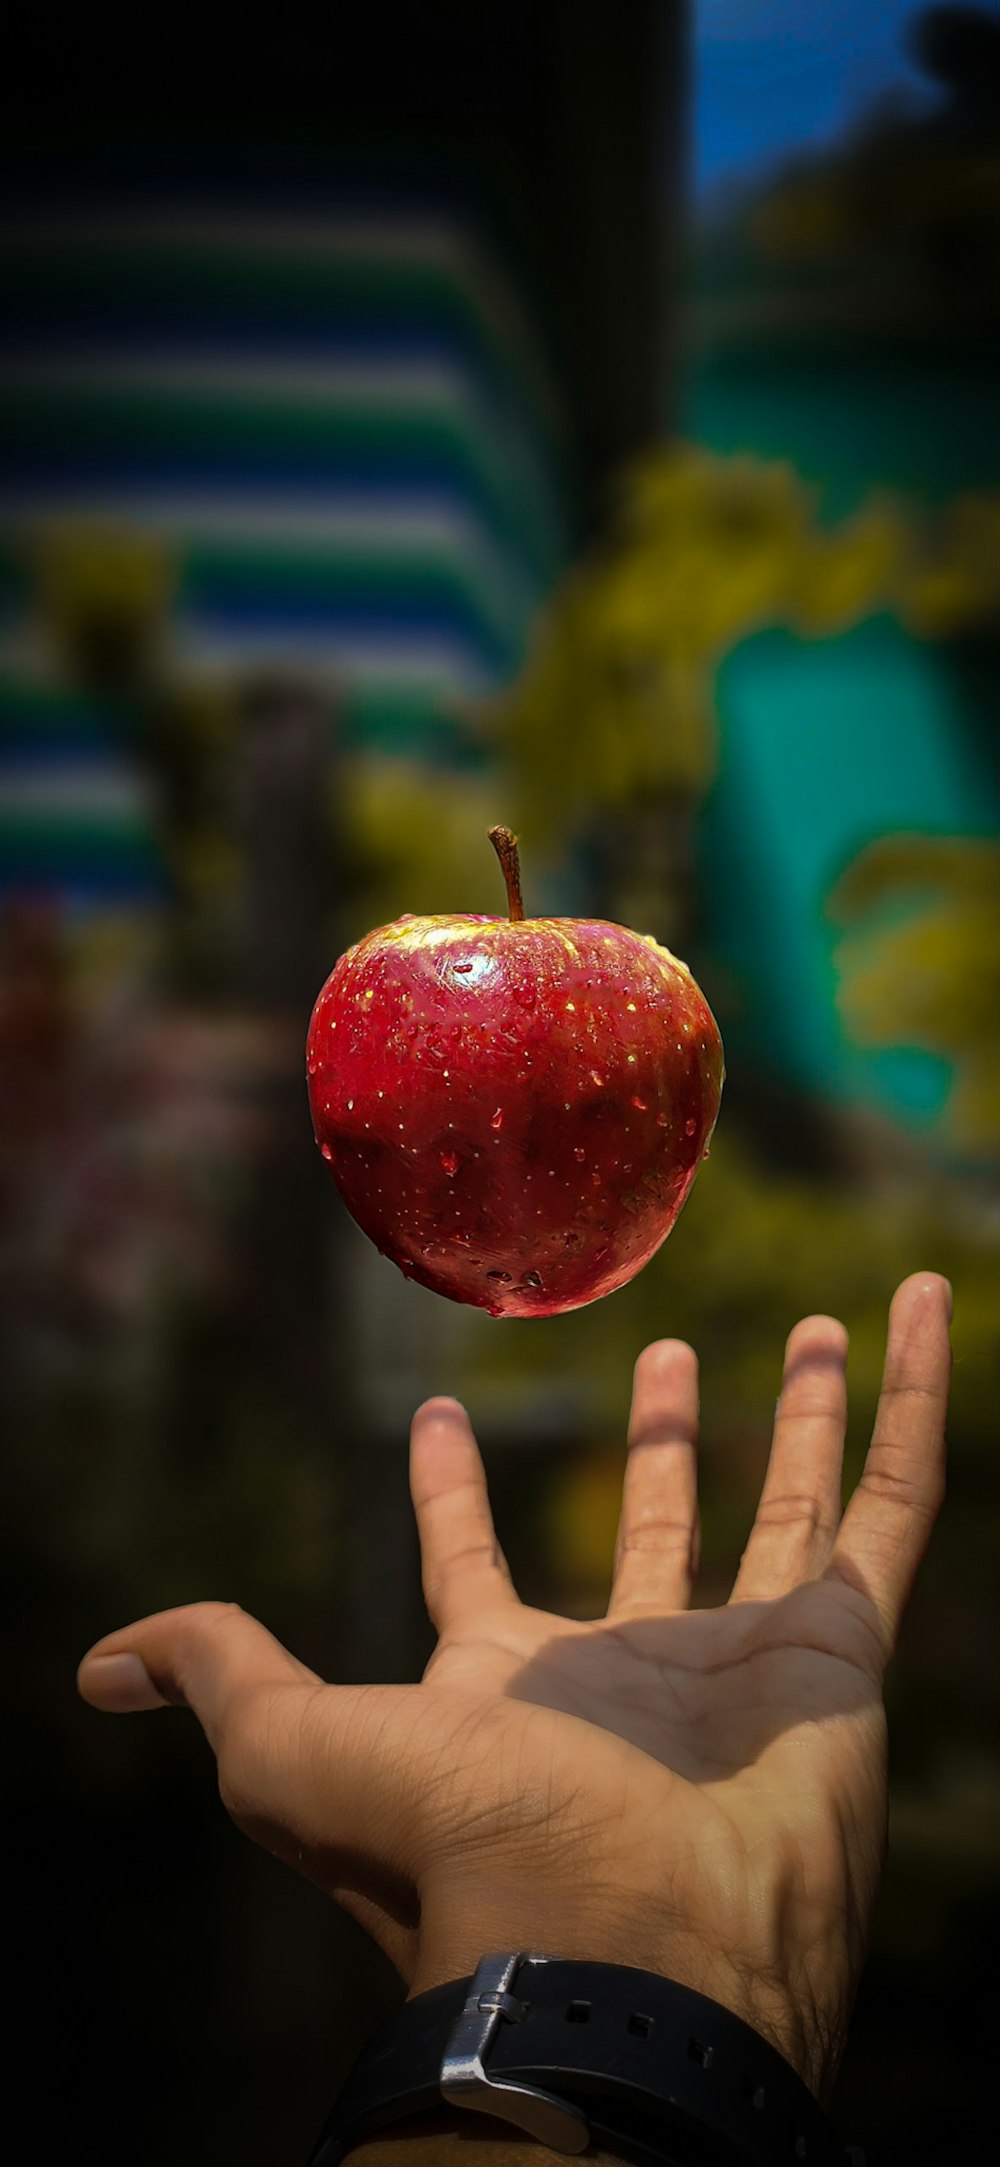 manzana roja cerca de la mano de la persona